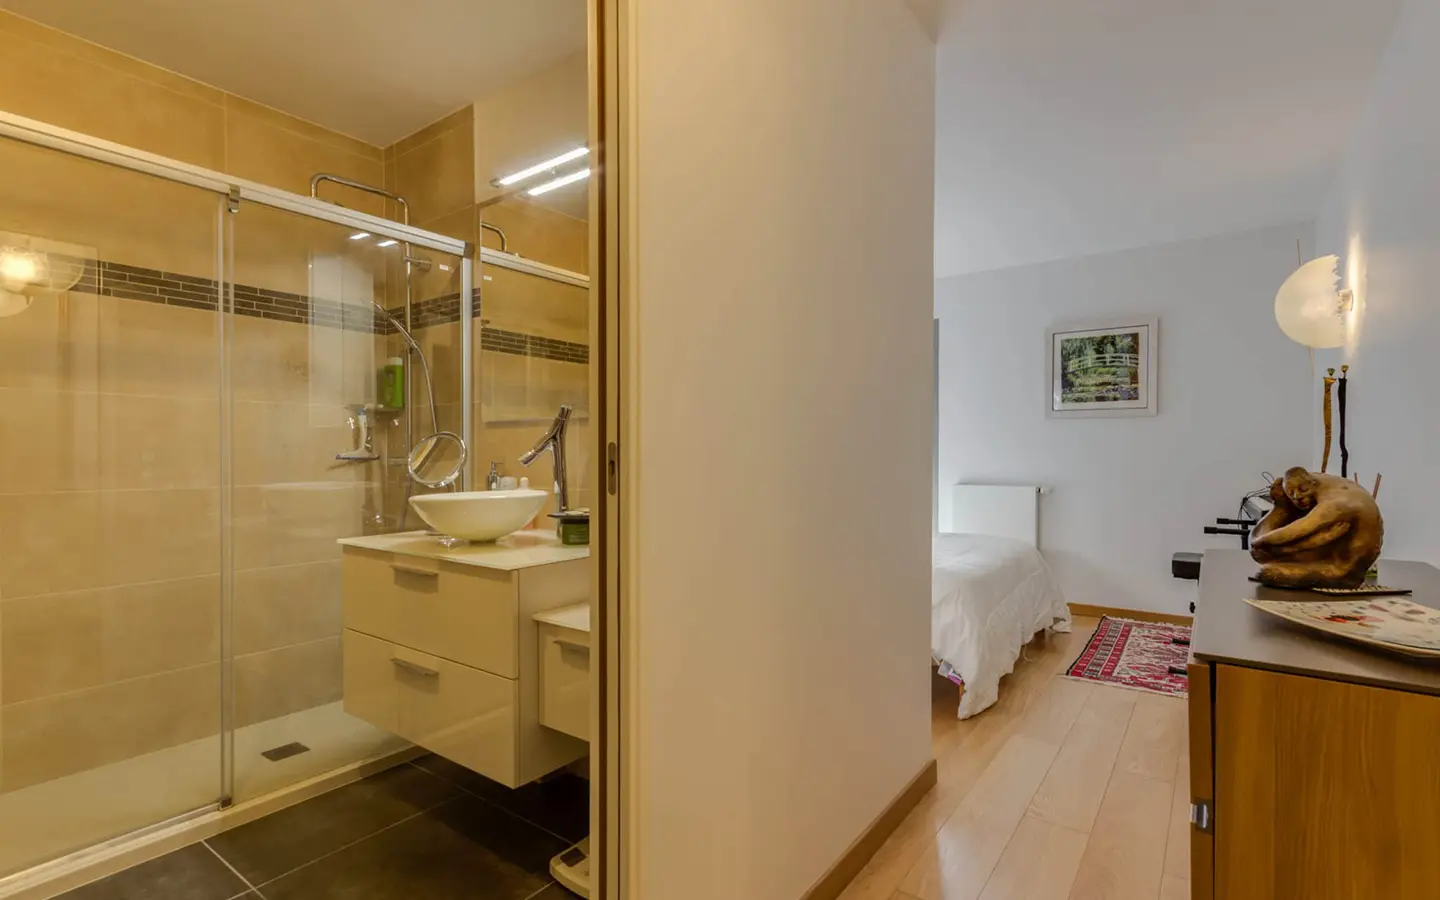 Achat immobilier appartement Menthon-Saint-Bernard chambre avec salle de bains